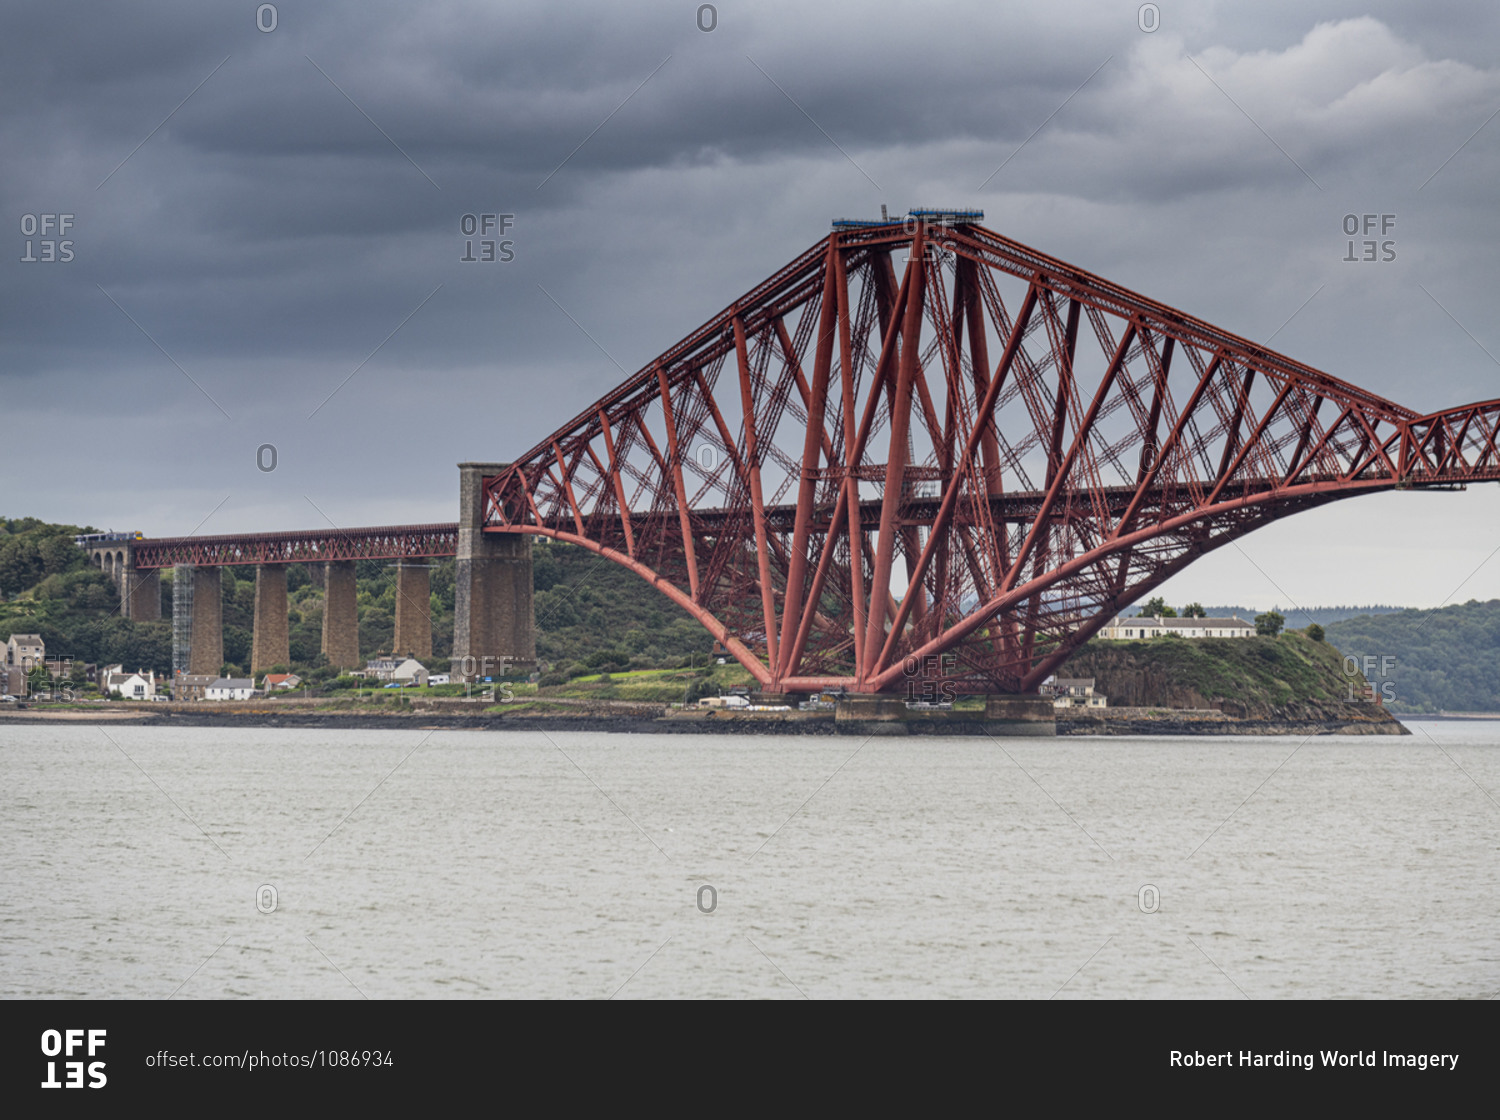 The Forth Bridge, cantilever bridge, UNESCO World Heritage Site, Firth of Forth, Scotland, United Kingdom, Europe